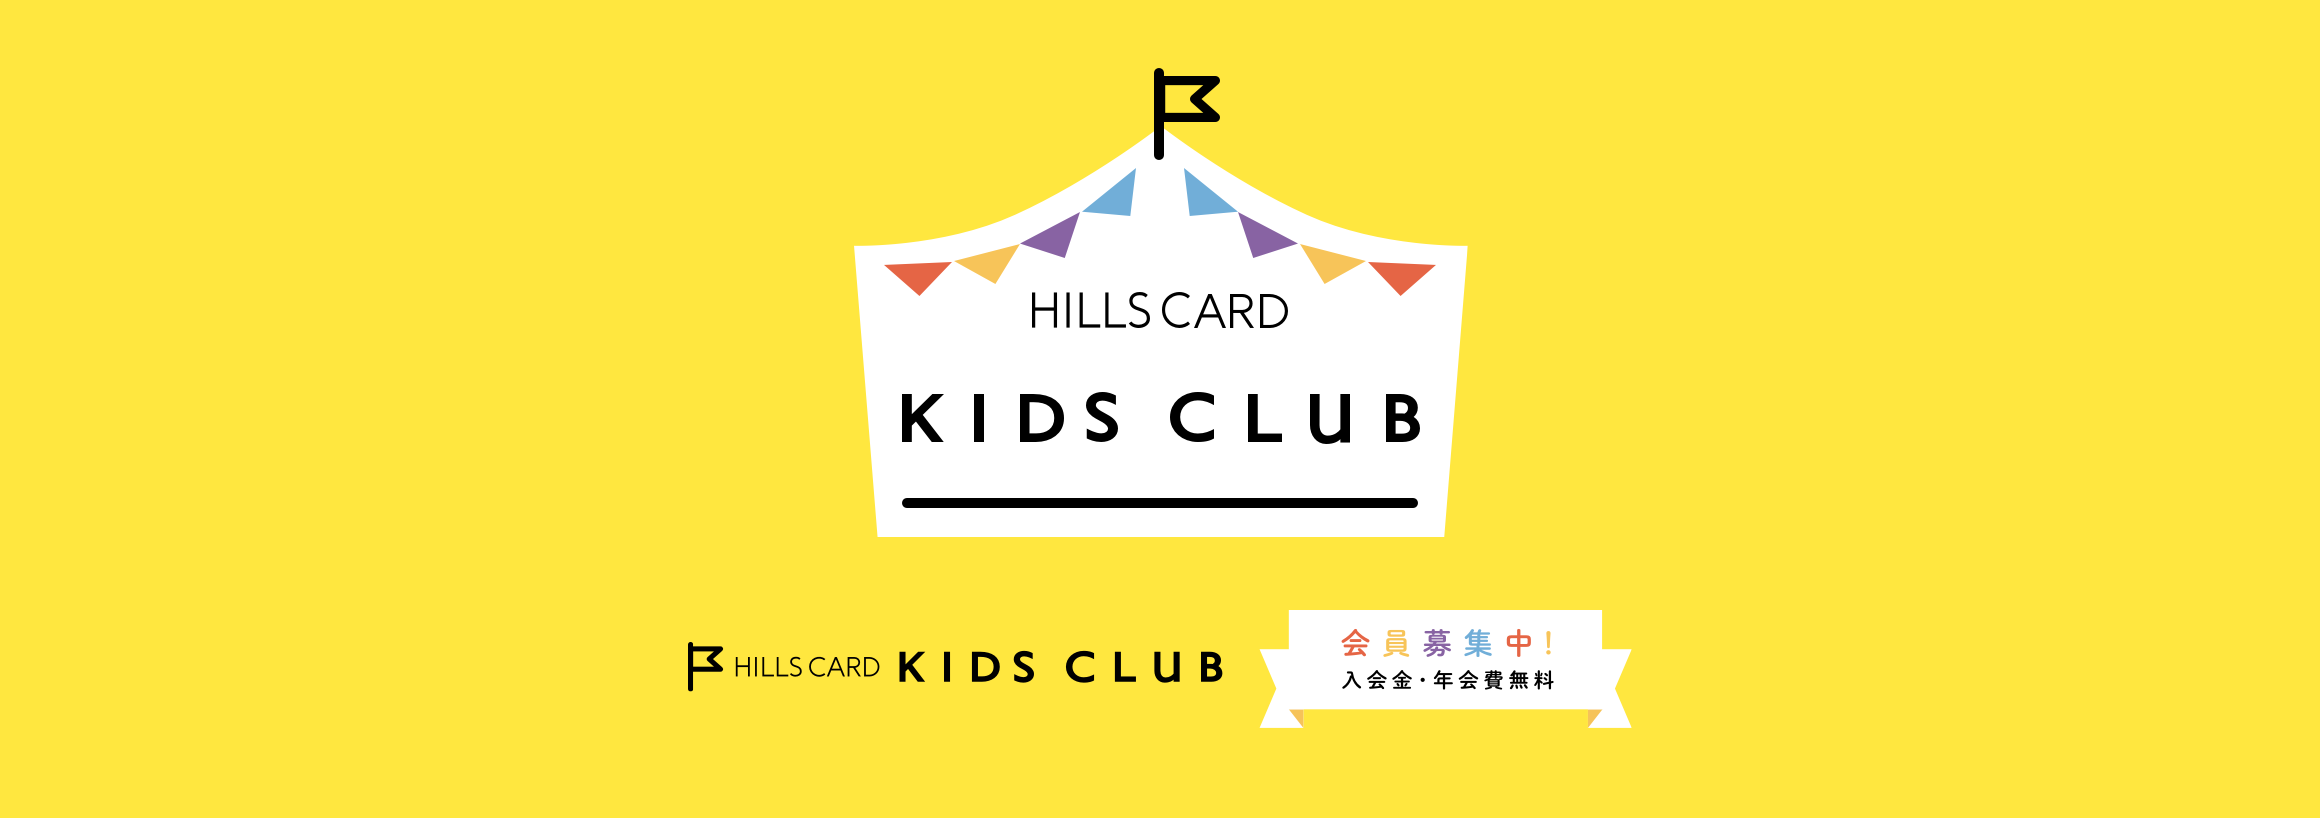 HILLS CARD KIDS CLUB